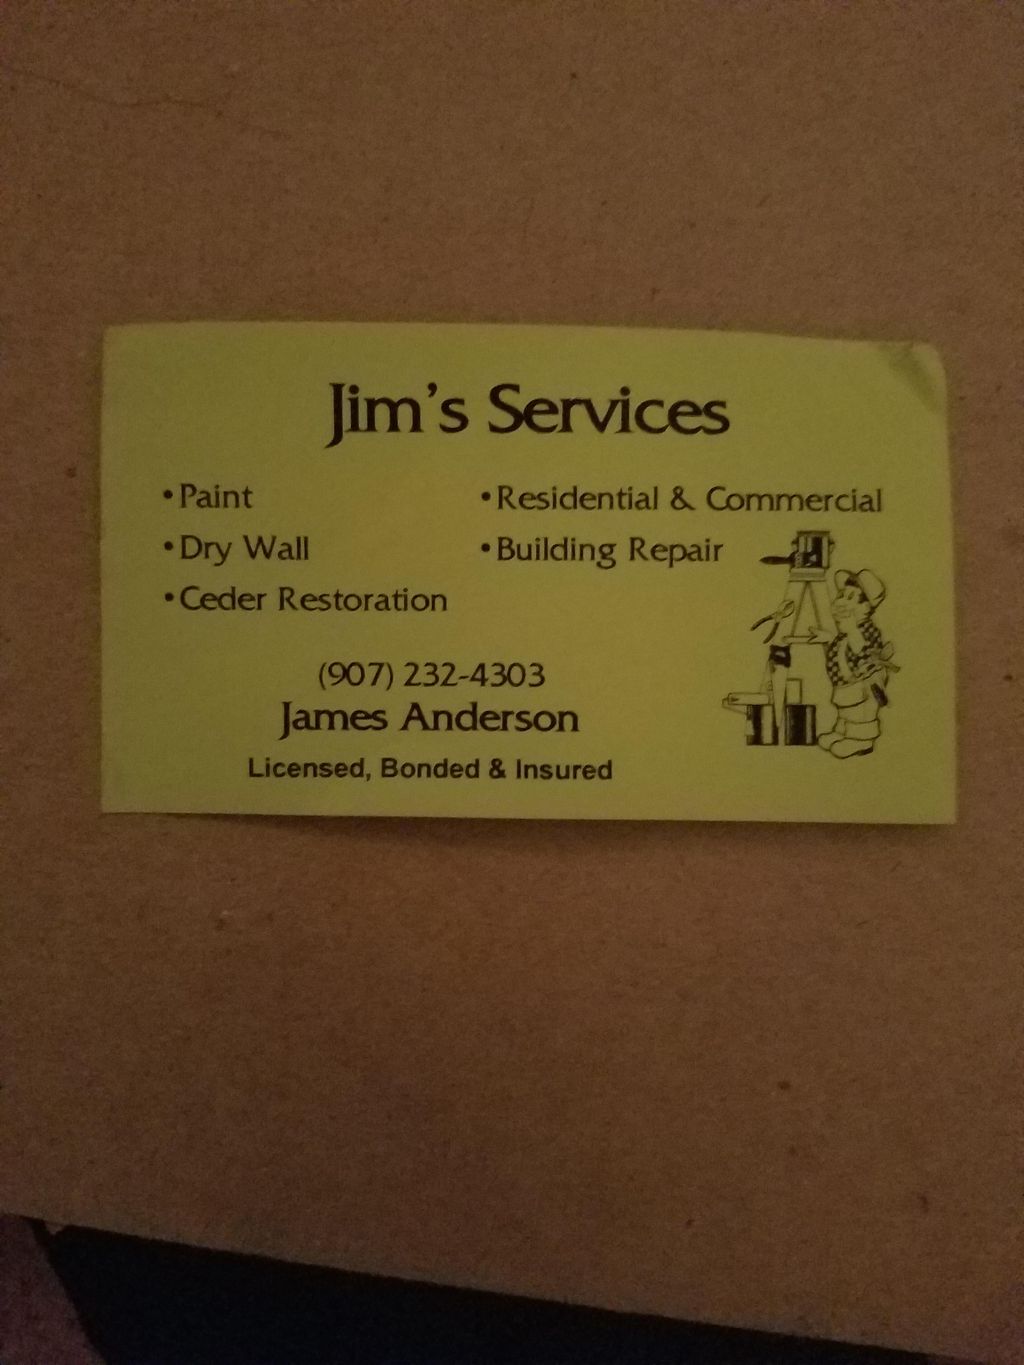 Jim's Services